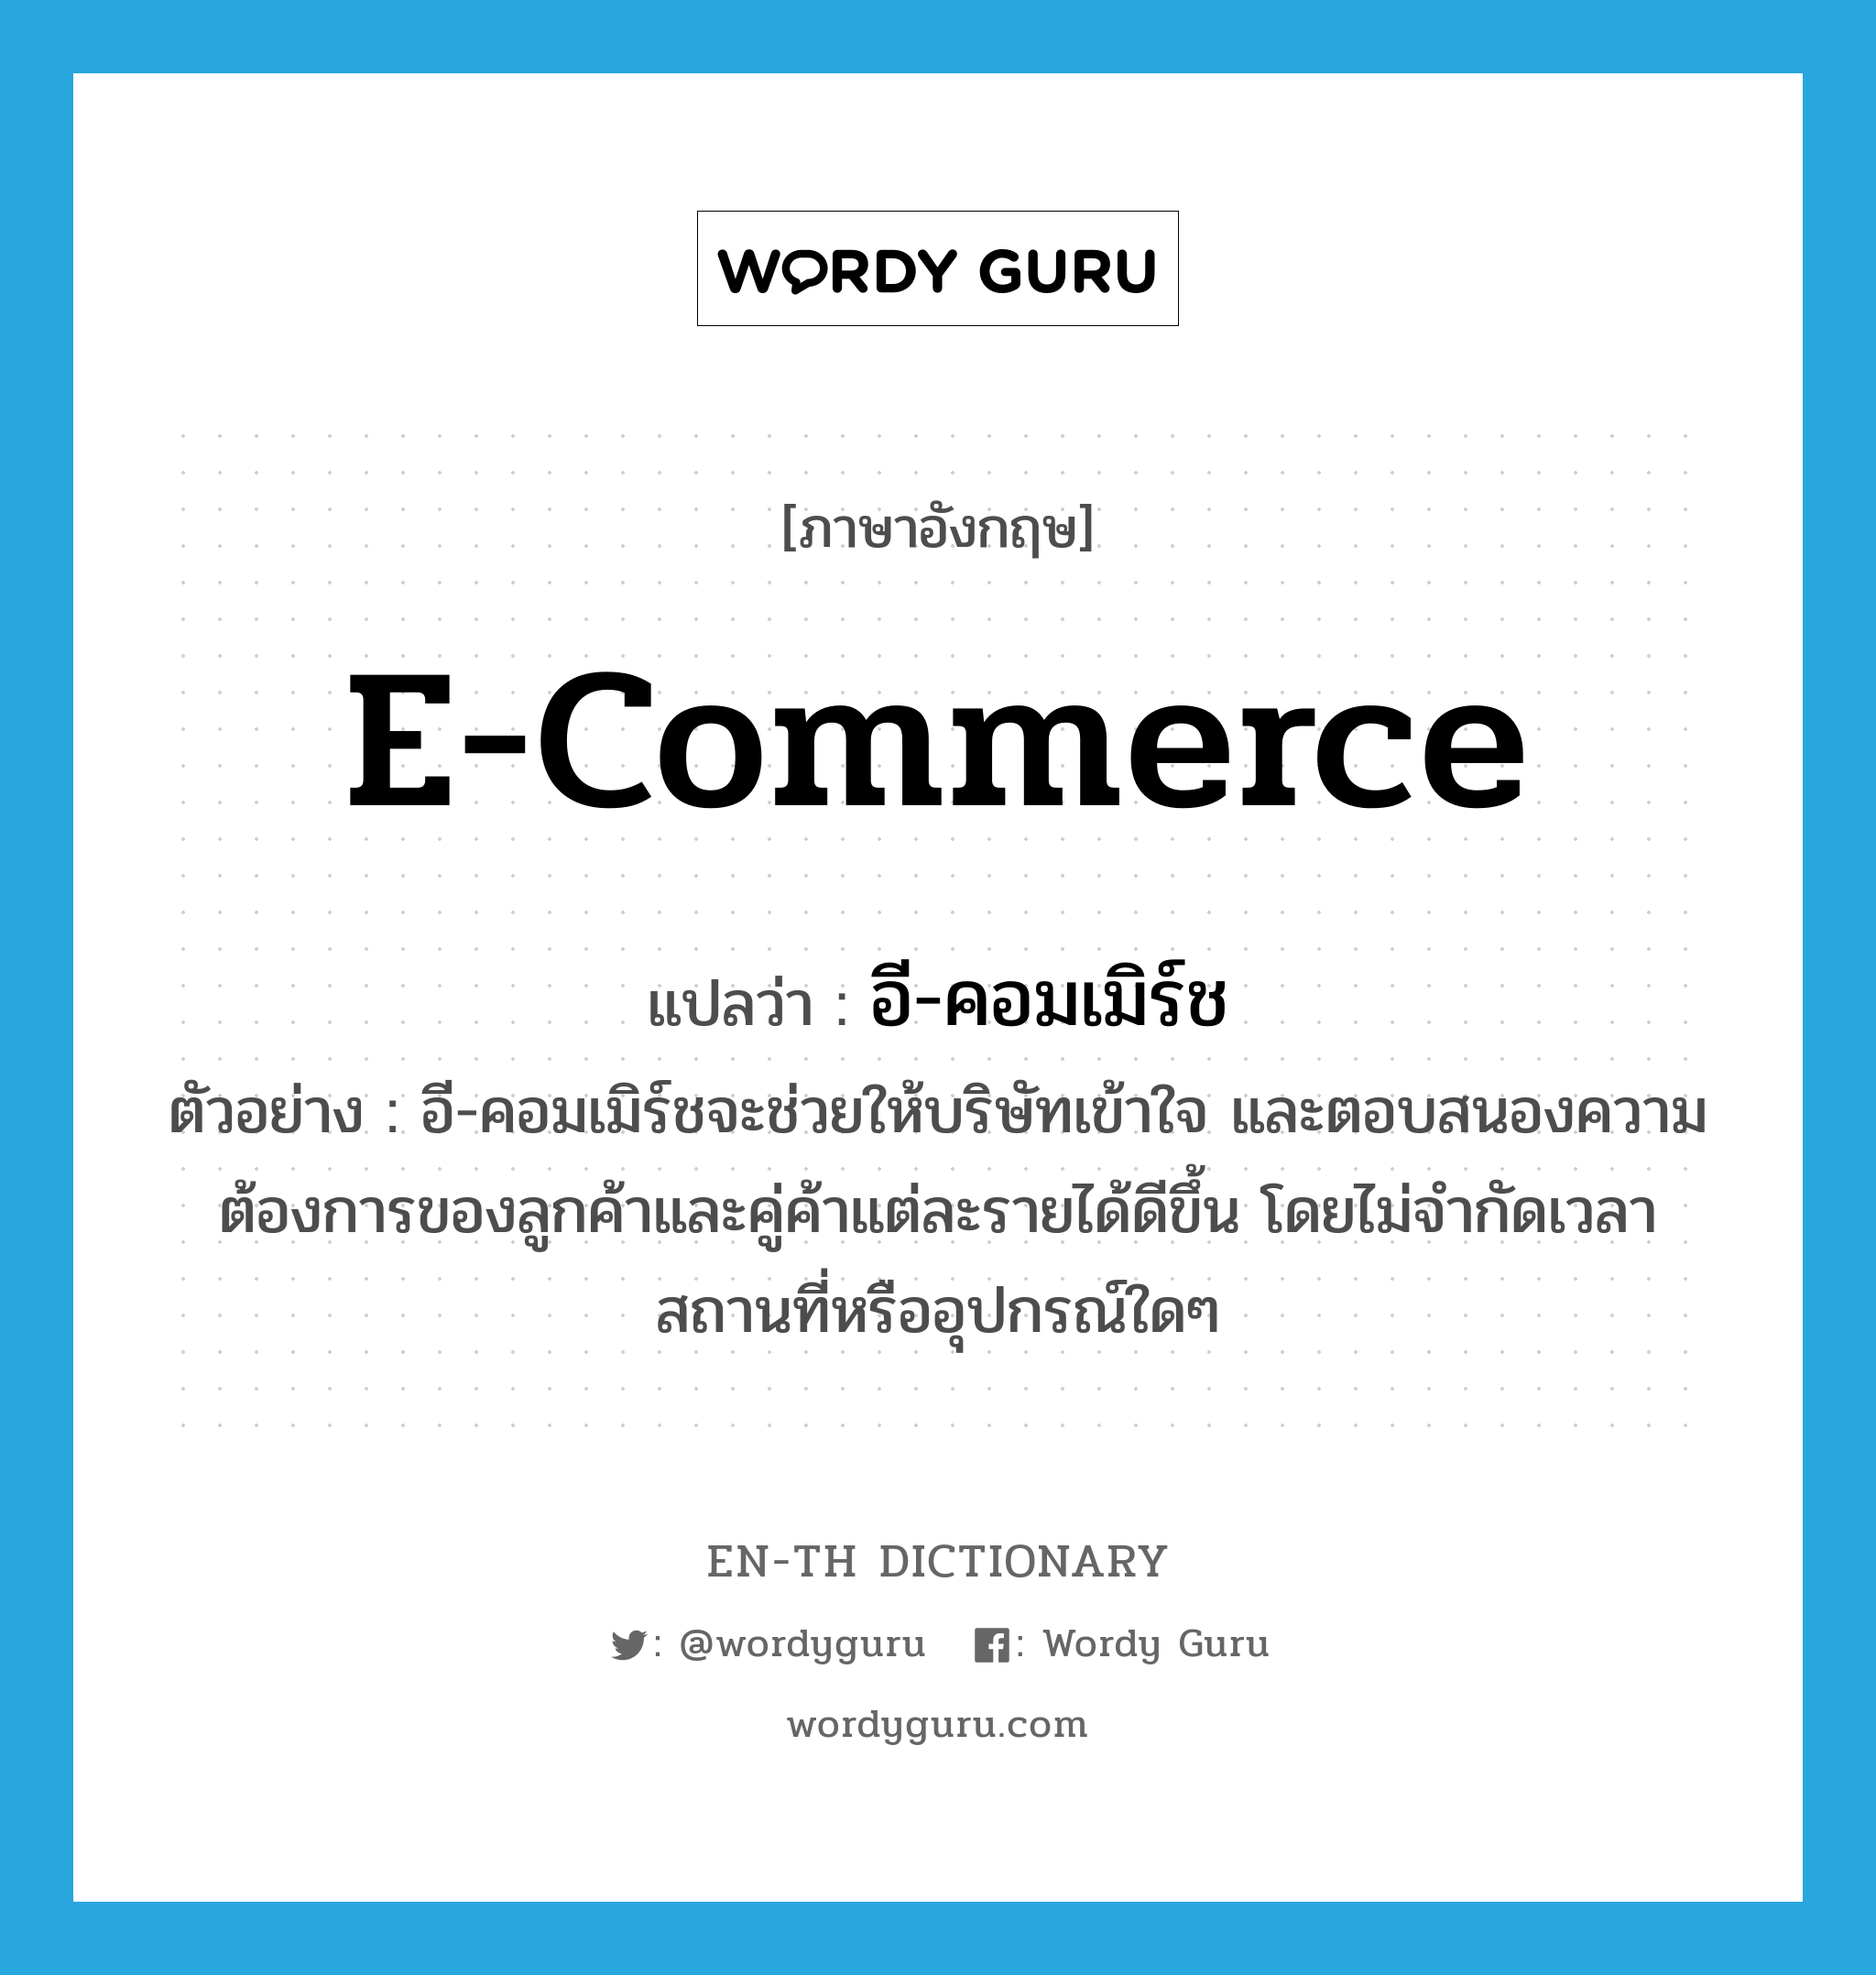 E-Commerce แปลว่า?, คำศัพท์ภาษาอังกฤษ E-Commerce แปลว่า อี-คอมเมิร์ช ประเภท N ตัวอย่าง อี-คอมเมิร์ชจะช่วยให้บริษัทเข้าใจ และตอบสนองความต้องการของลูกค้าและคู่ค้าแต่ละรายได้ดีขึ้น โดยไม่จำกัดเวลา สถานที่หรืออุปกรณ์ใดๆ หมวด N